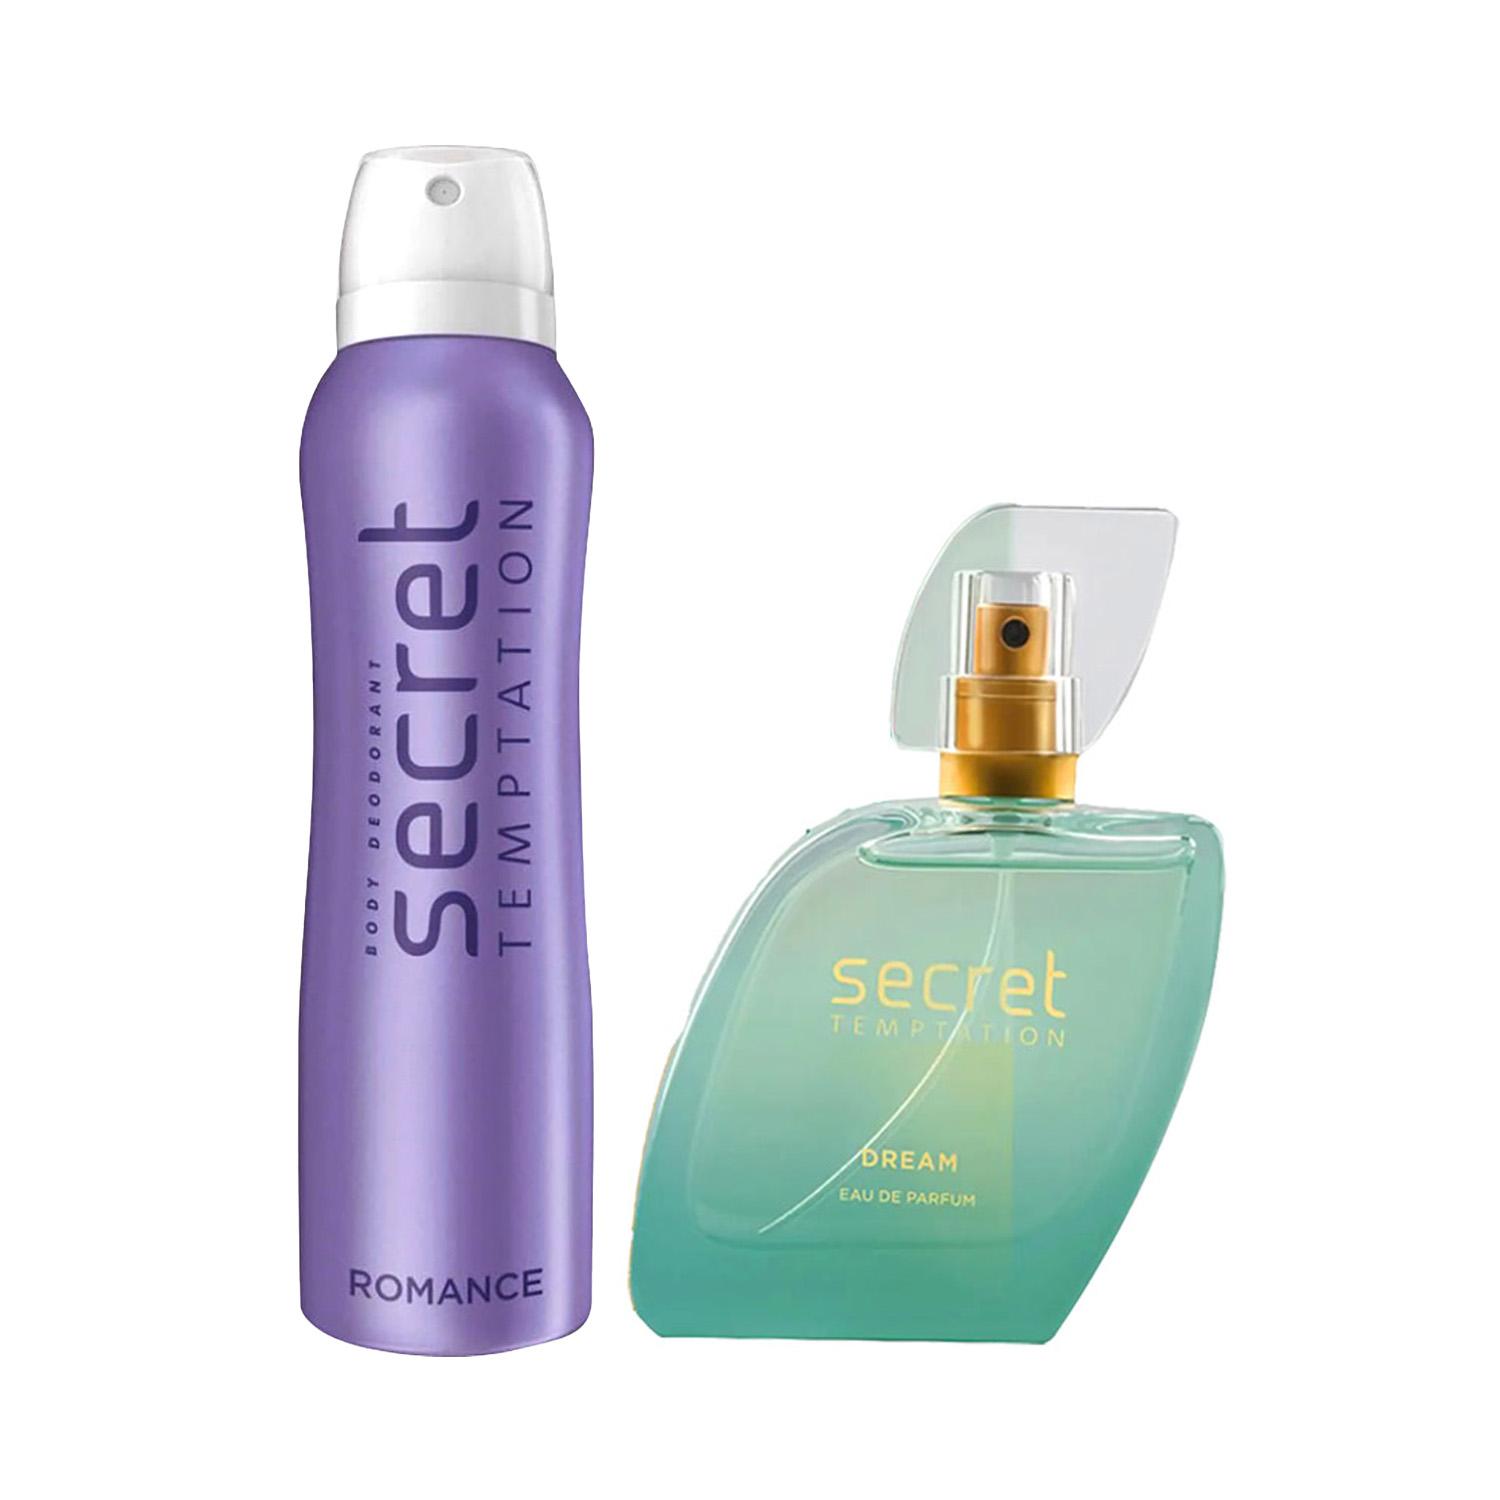 Secret Temptation Romance Daily Freshness Deodorant & Dream Eau De Parfum (50 ml) Combo